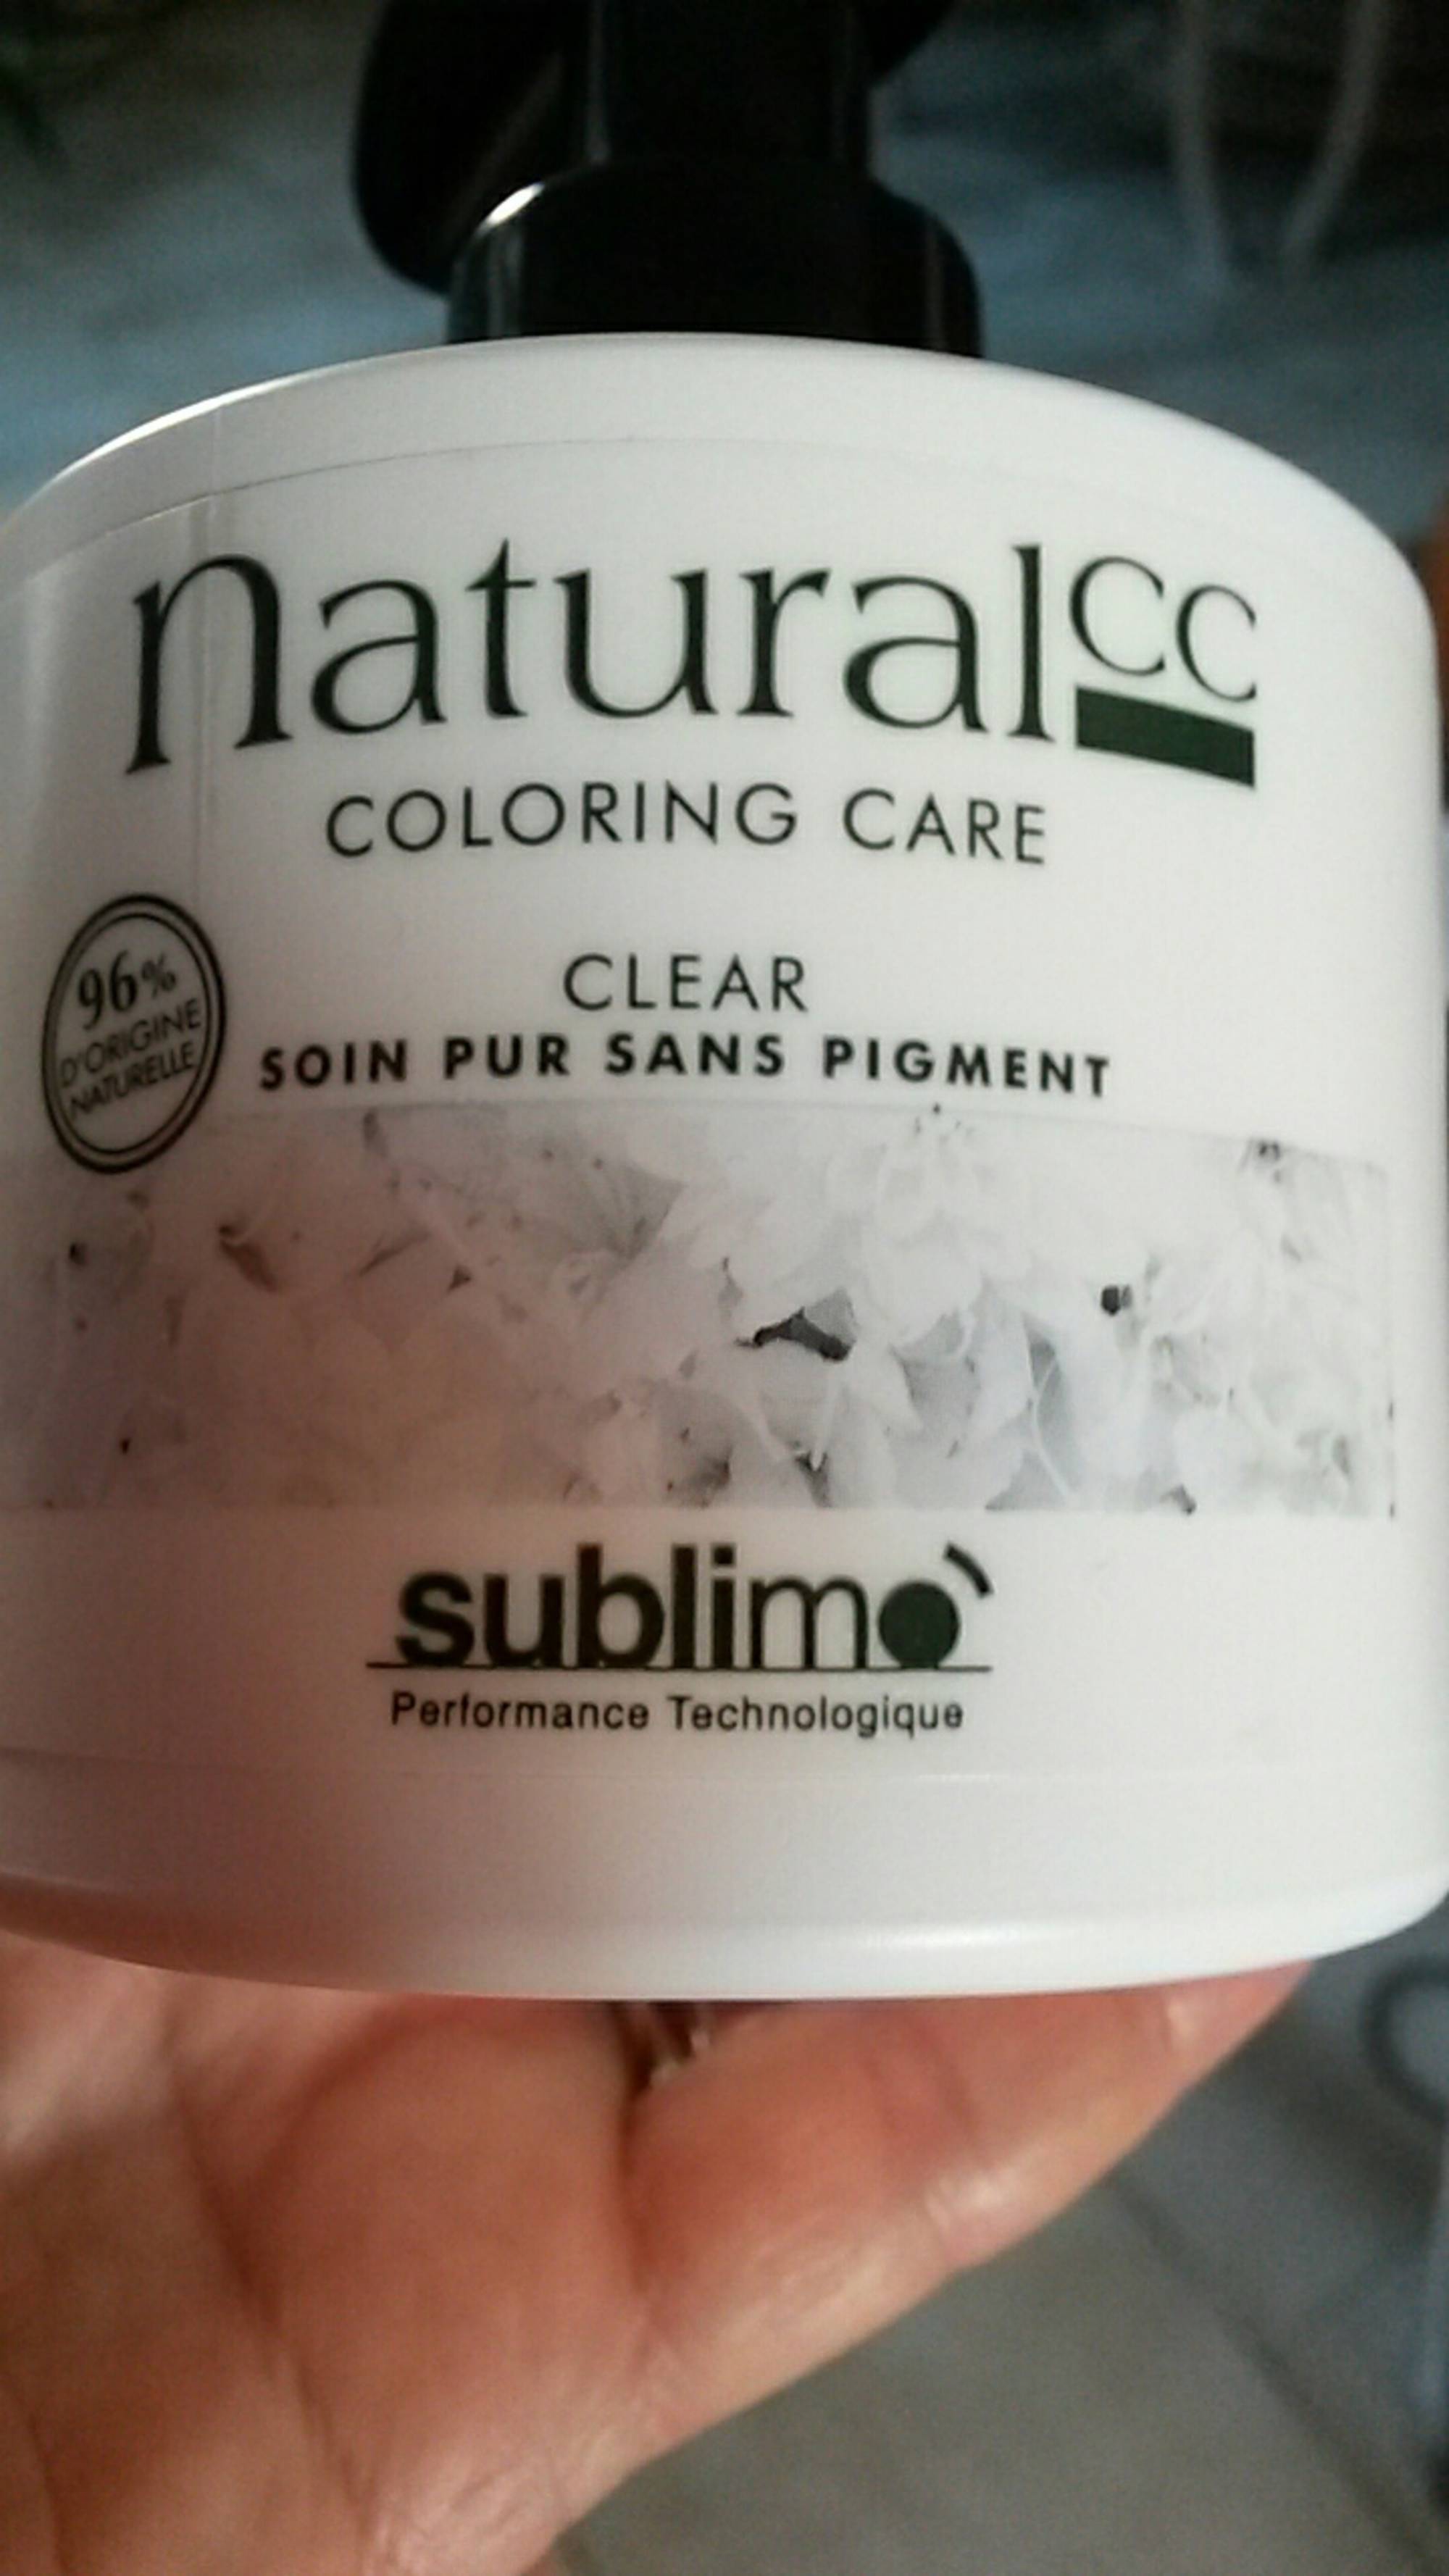 SUBLIMO - Natural CC - Clear soin pur sans pigment